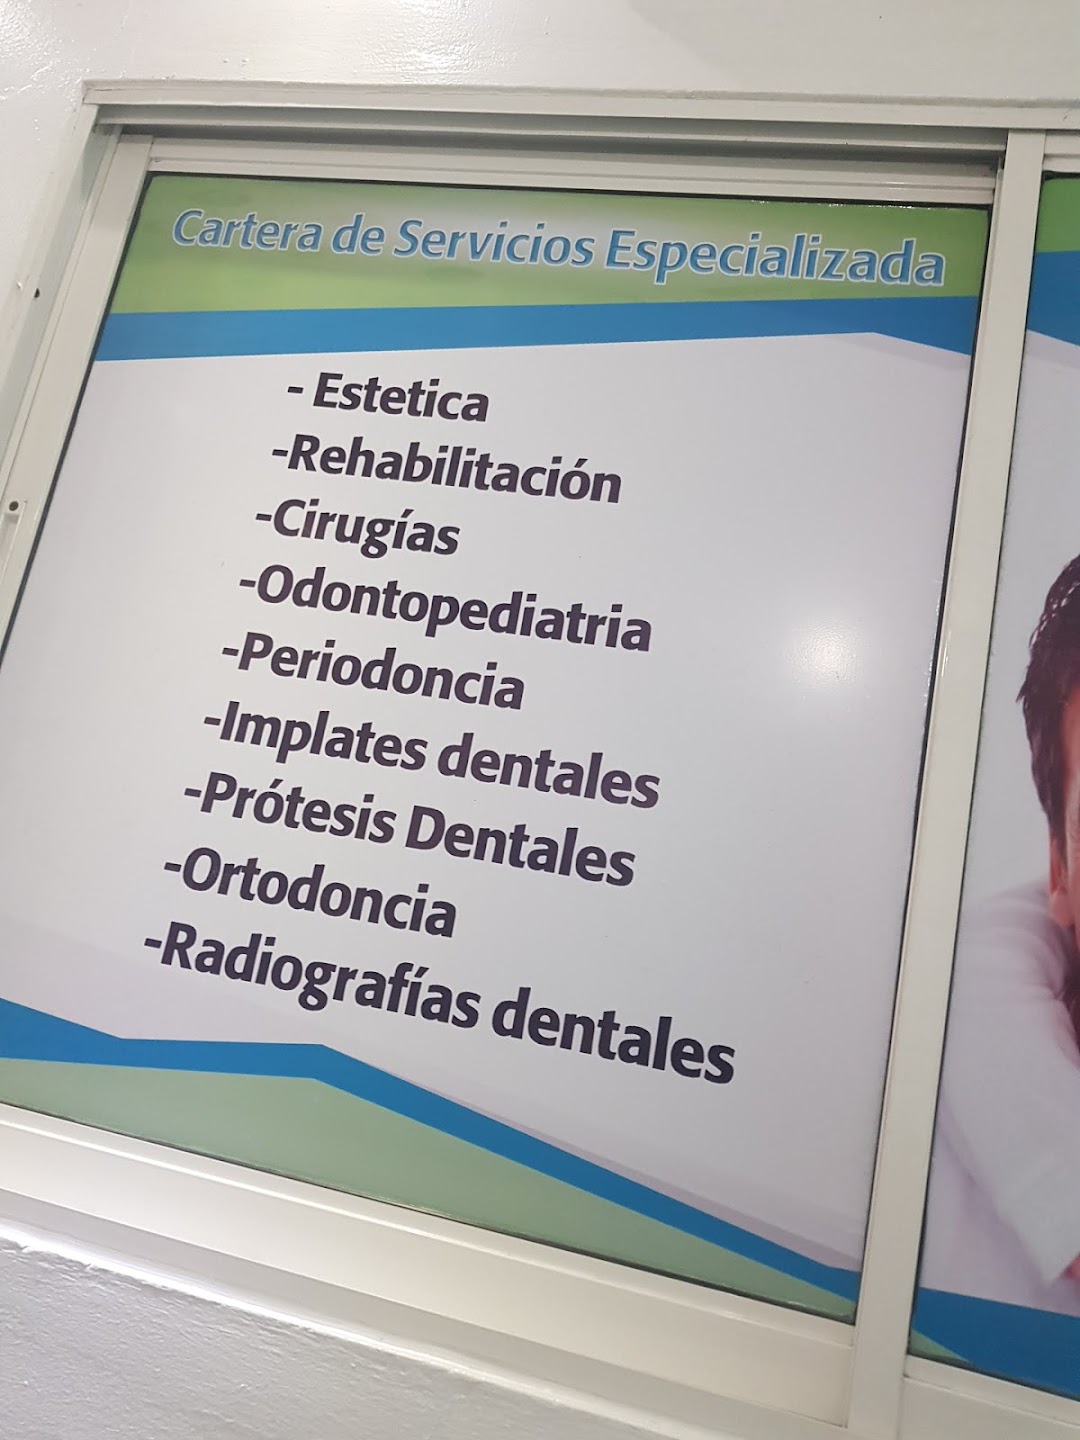 Centro Odontologico Bencosme